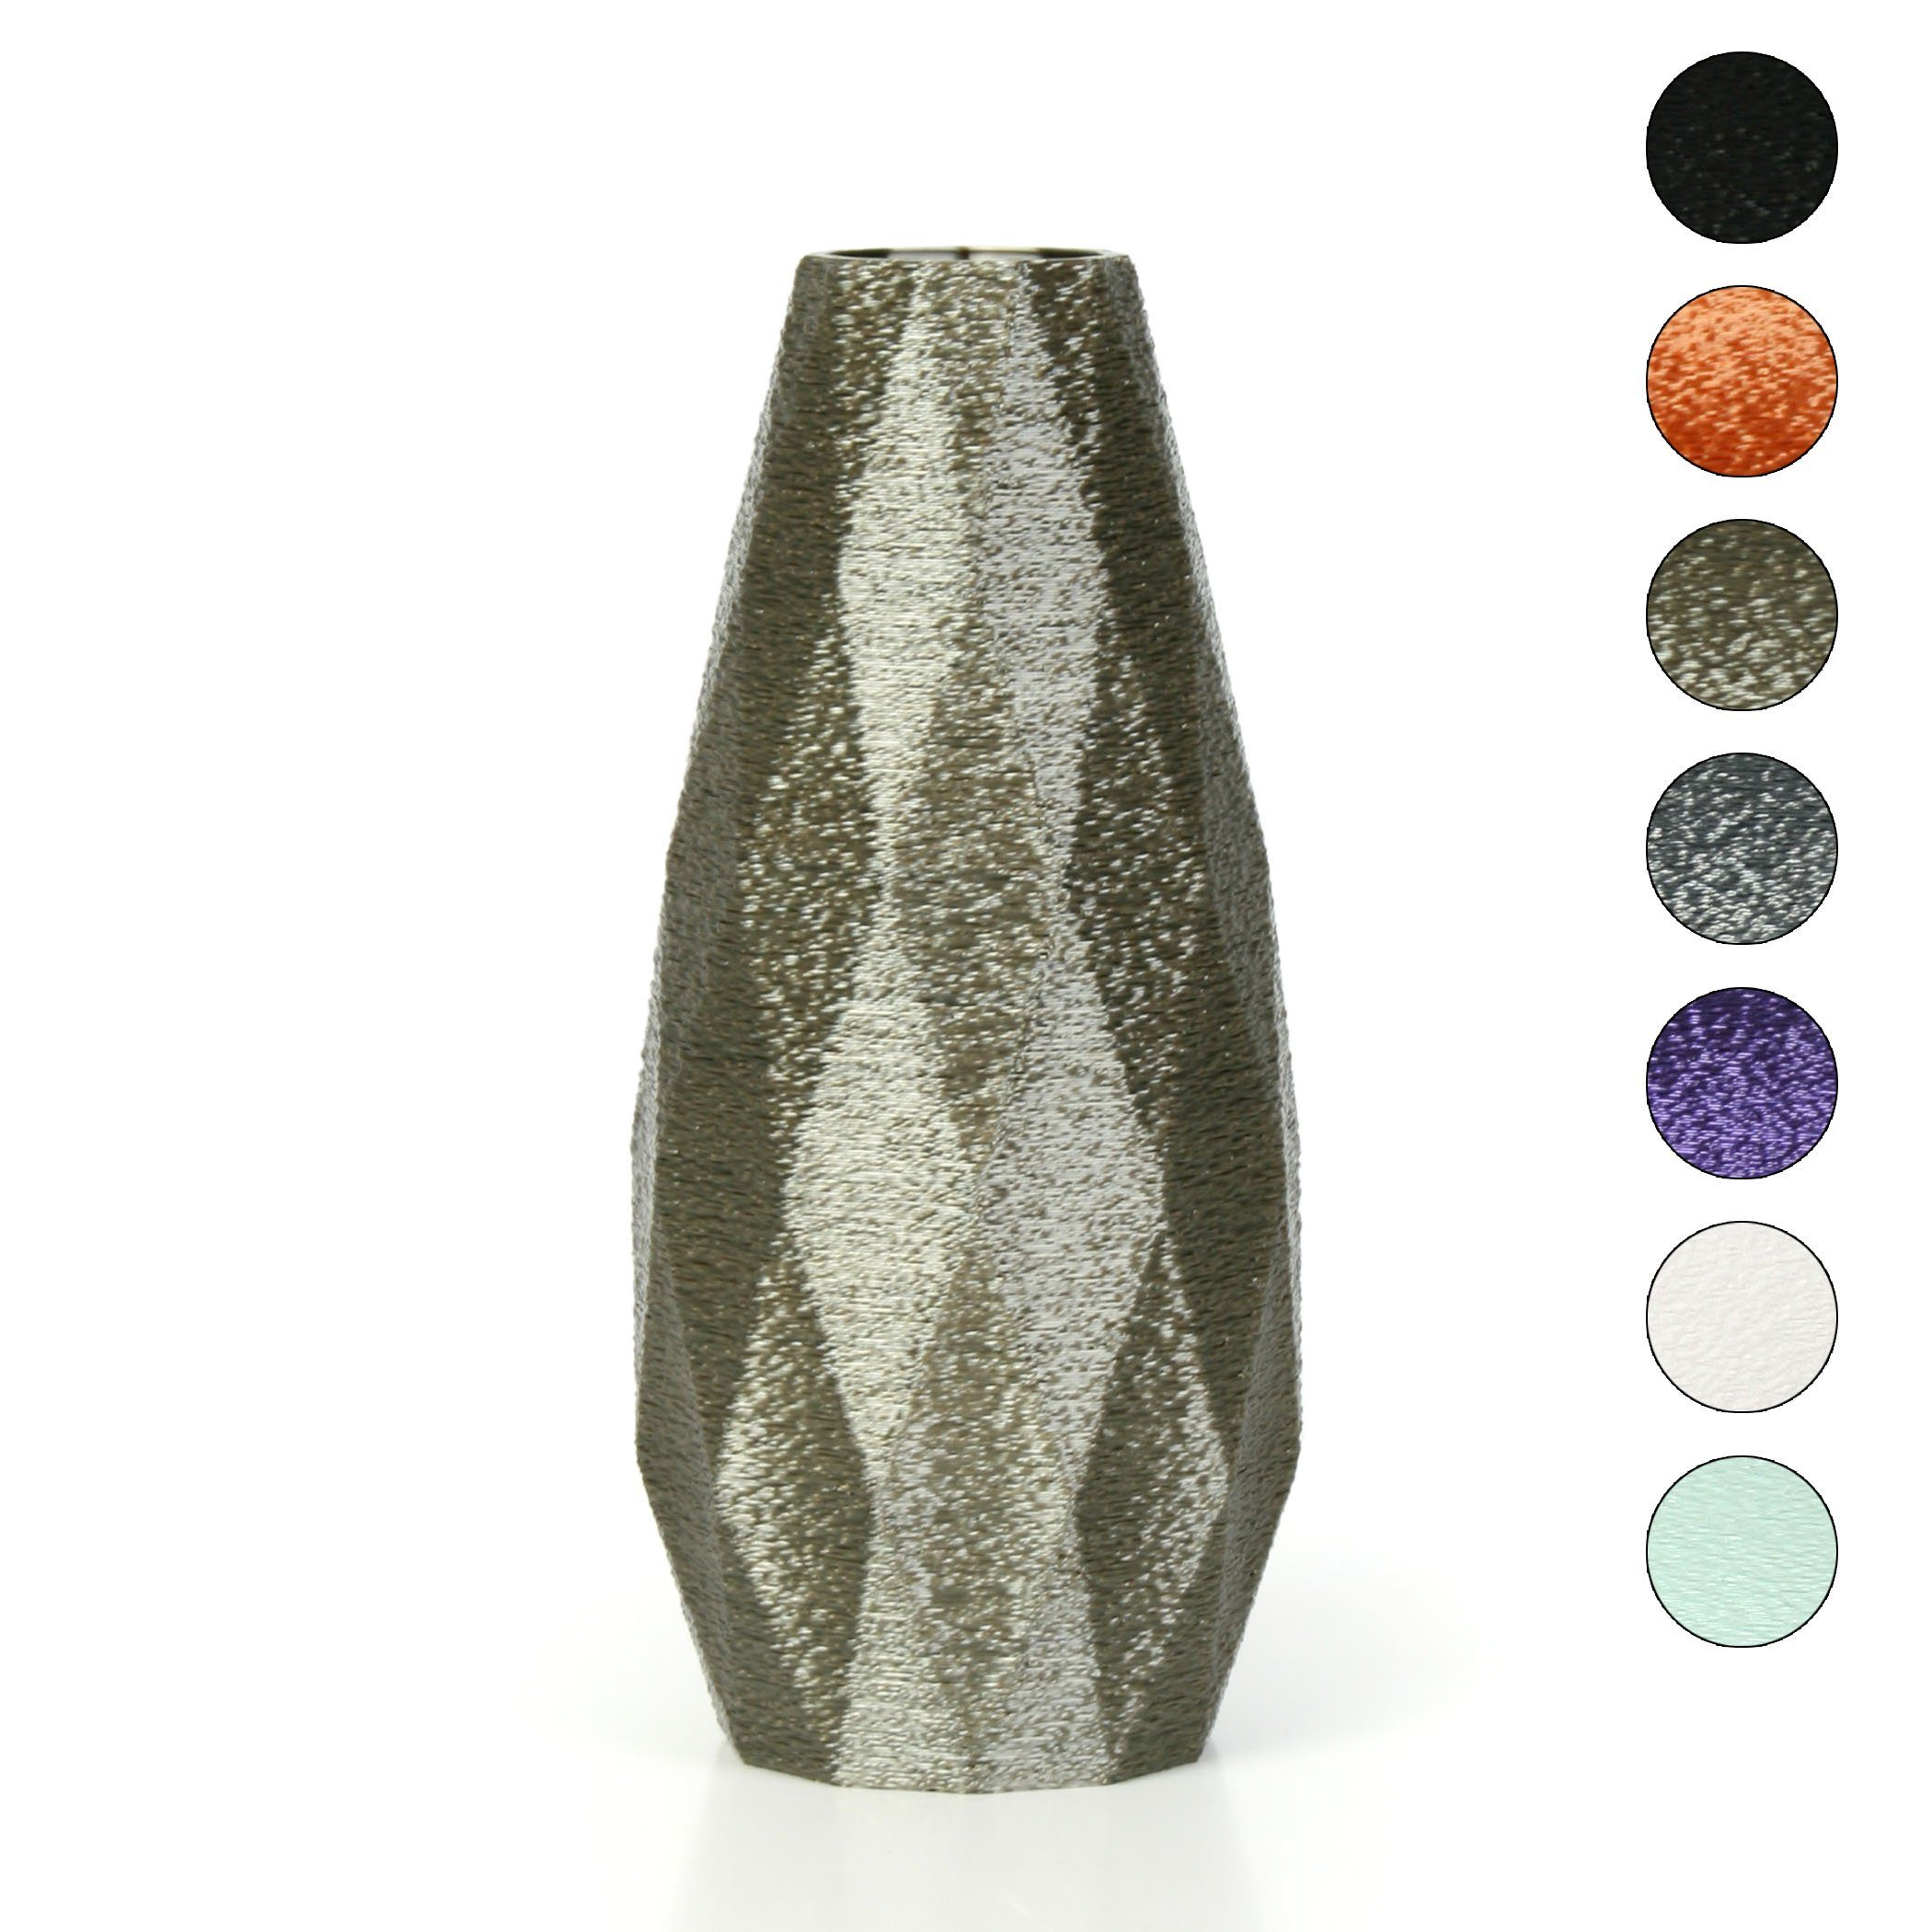 aus aus bruchsicher – Designer Bio-Kunststoff, Dekorative Feder Old Vase wasserdicht & Kreative Copper Rohstoffen; nachwachsenden Blumenvase Dekovase